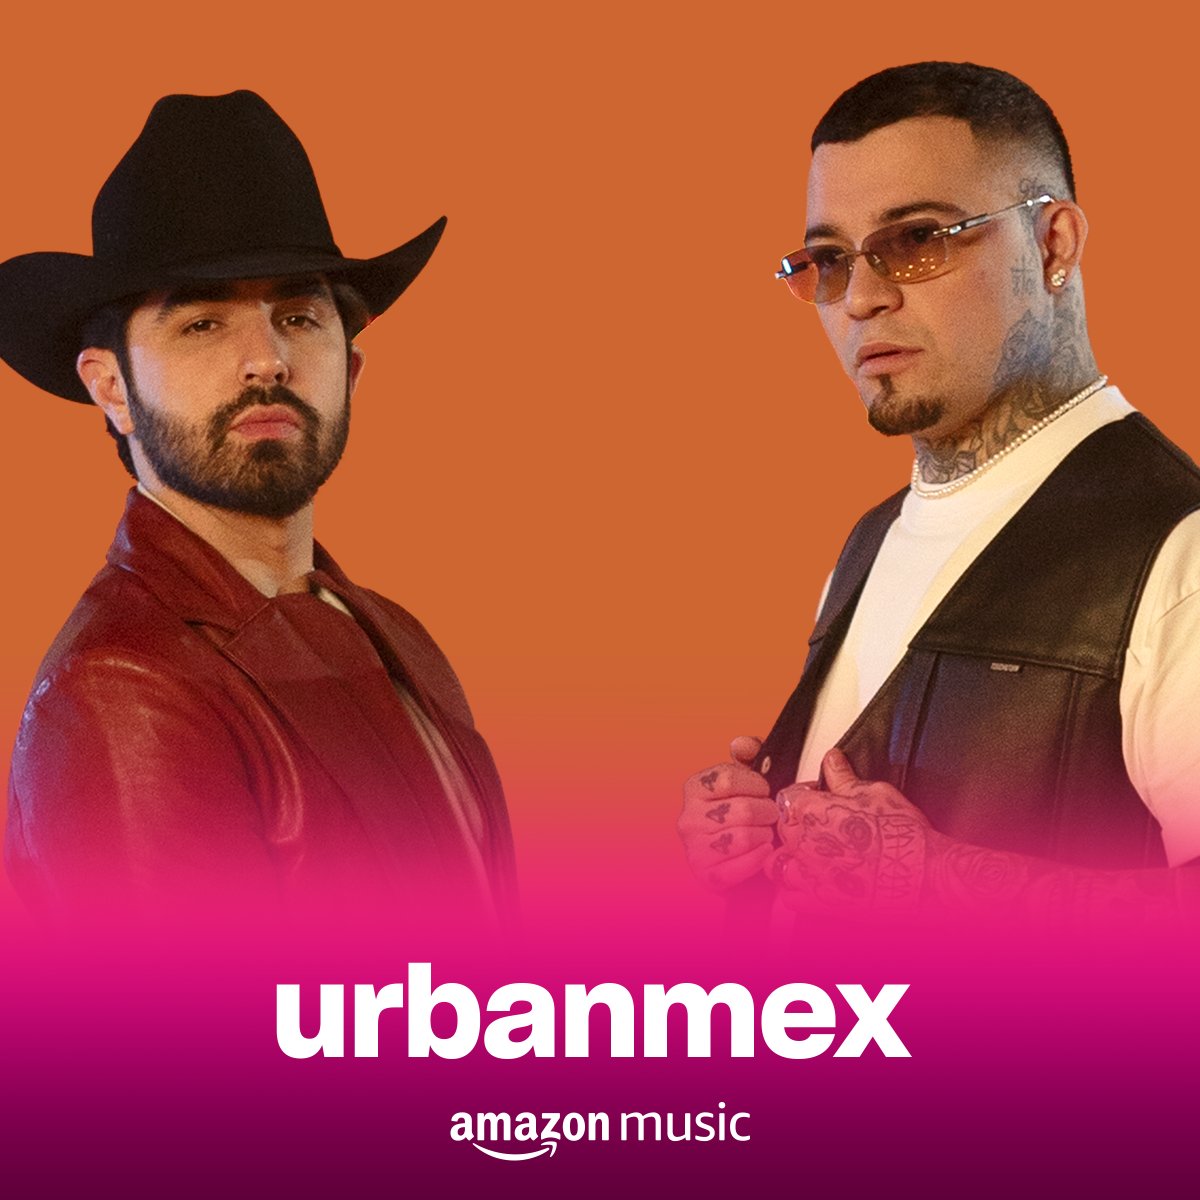 ¡Escucha #CuandoLlegueElDía de @JossFavela y #GeraMx en lo #Urbanmex de @AmazonMusicMX 🤠❤️! Escucha aquí: music.amazon.com.mx/playlists/B0B1…